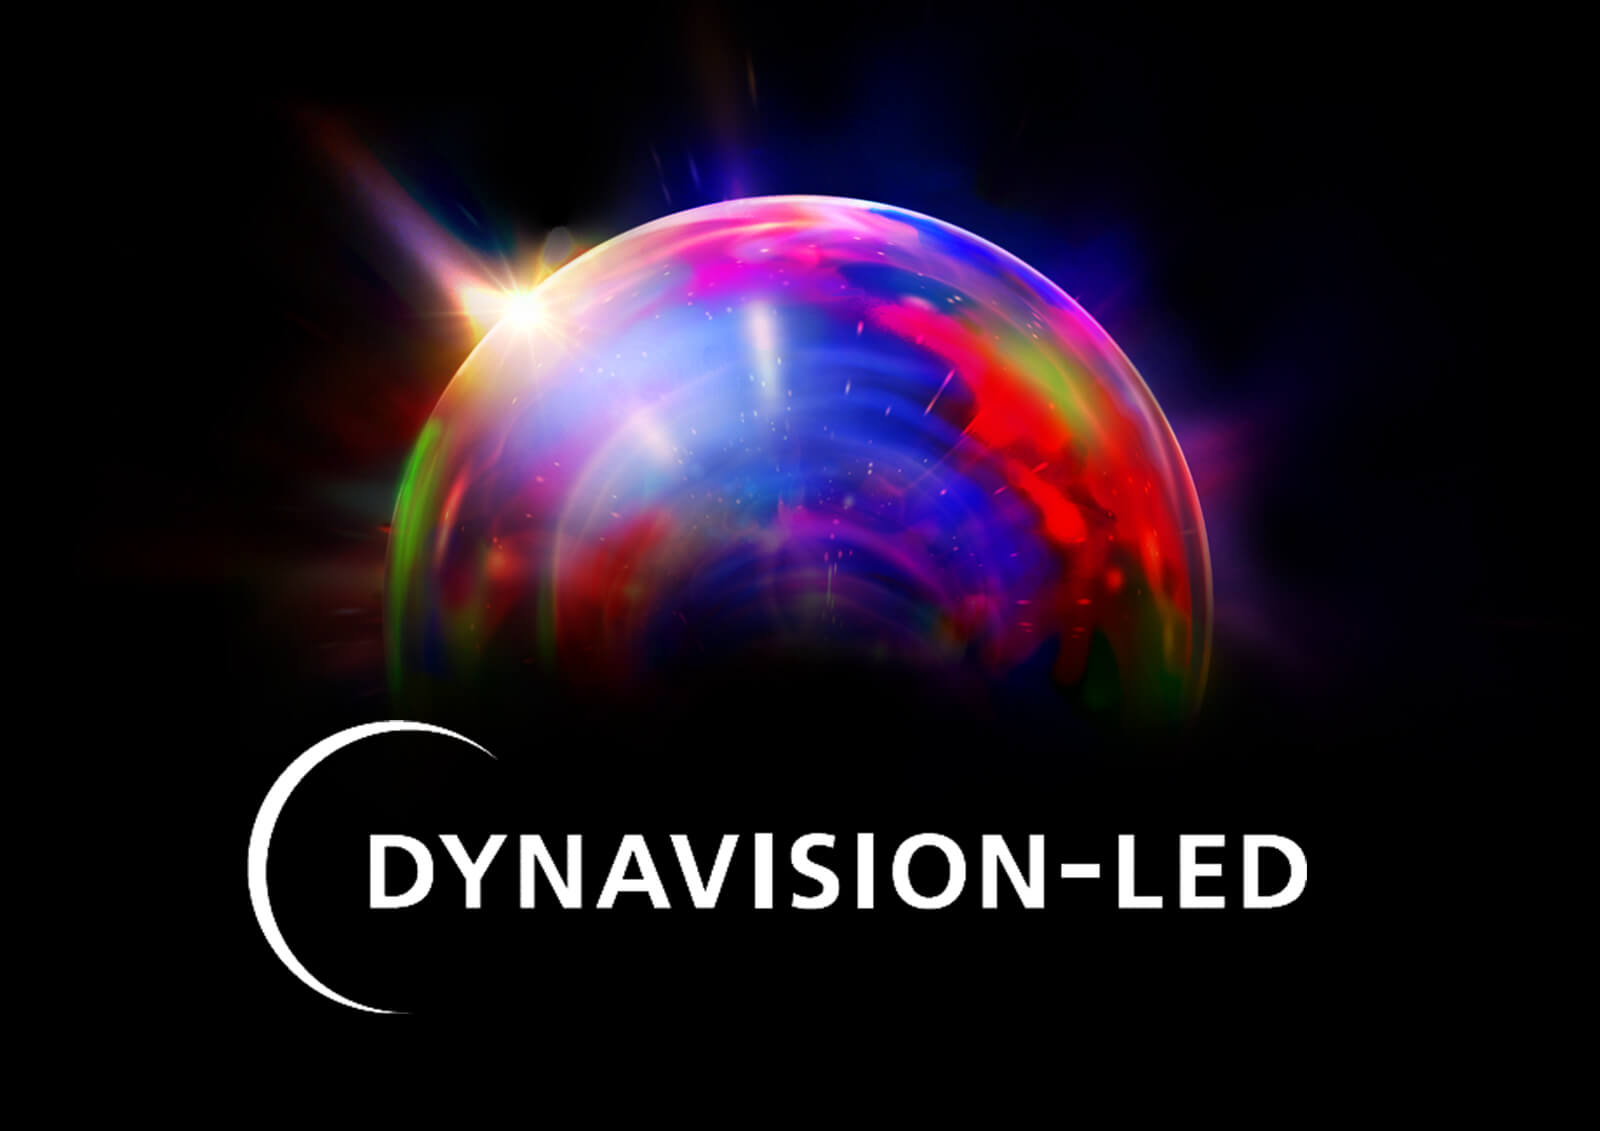 DYNAVISION-LED